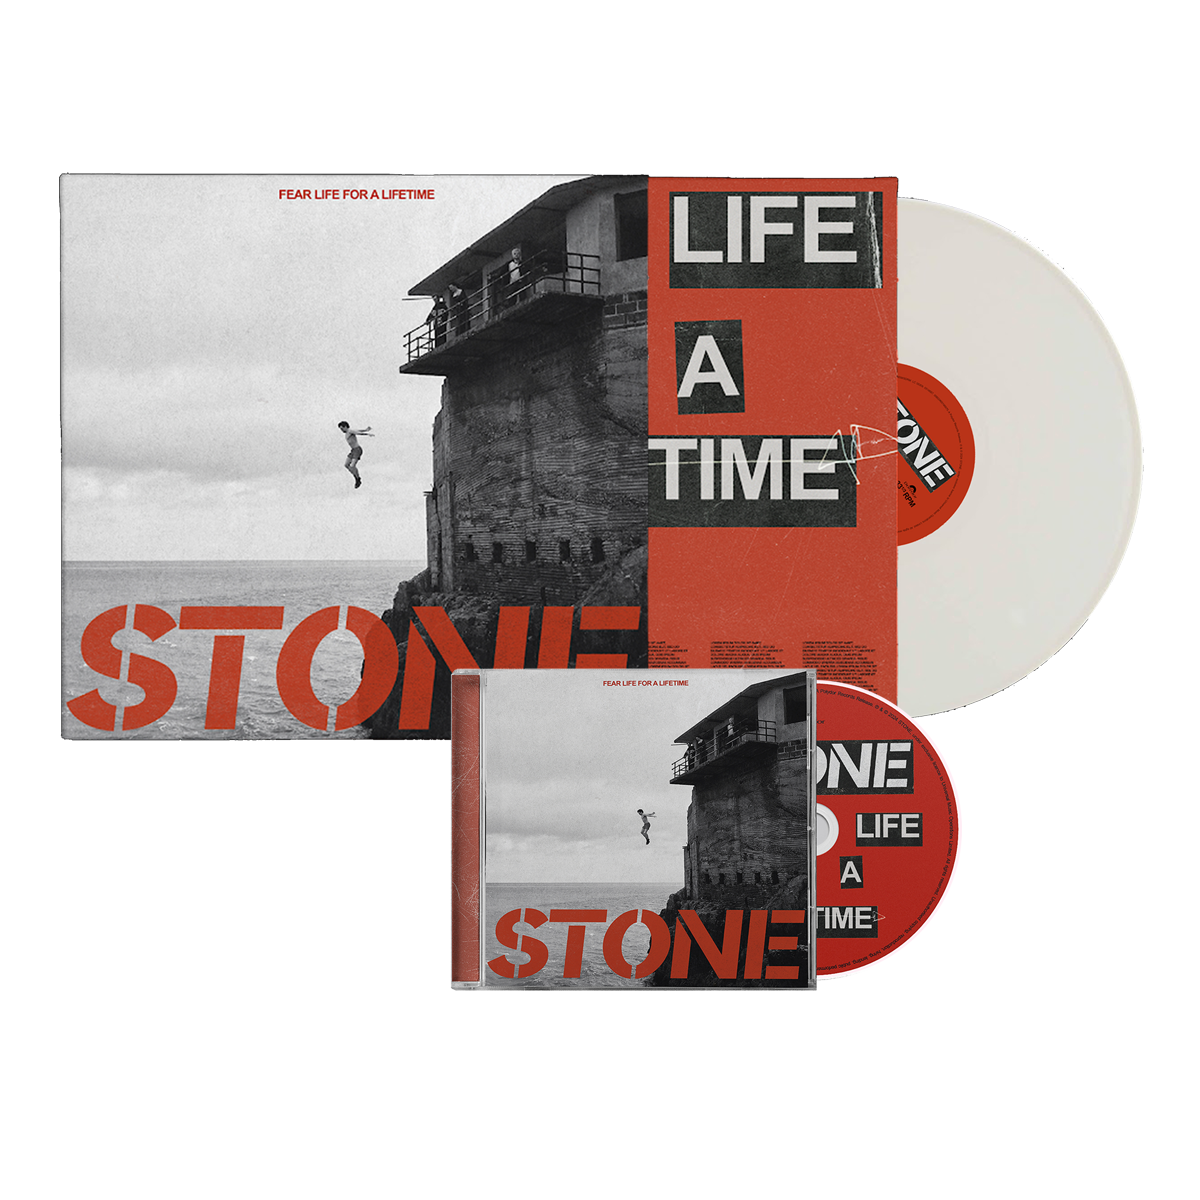 Fear Life For A Lifetime CD, White Vinyl